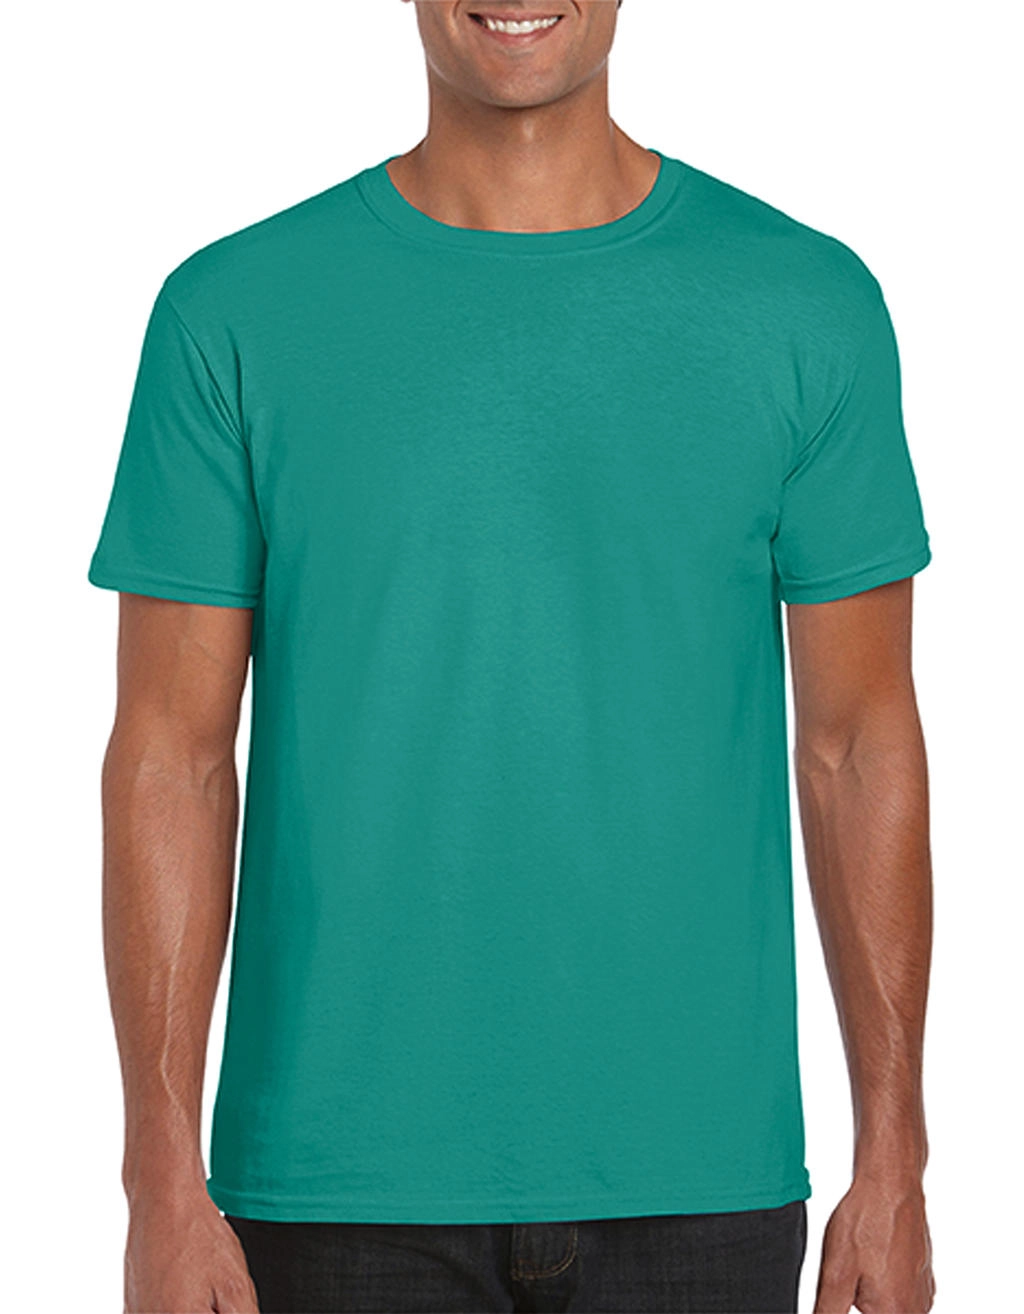 Softstyle® Ring Spun T-Shirt zum Besticken und Bedrucken in der Farbe Jade Dome mit Ihren Logo, Schriftzug oder Motiv.